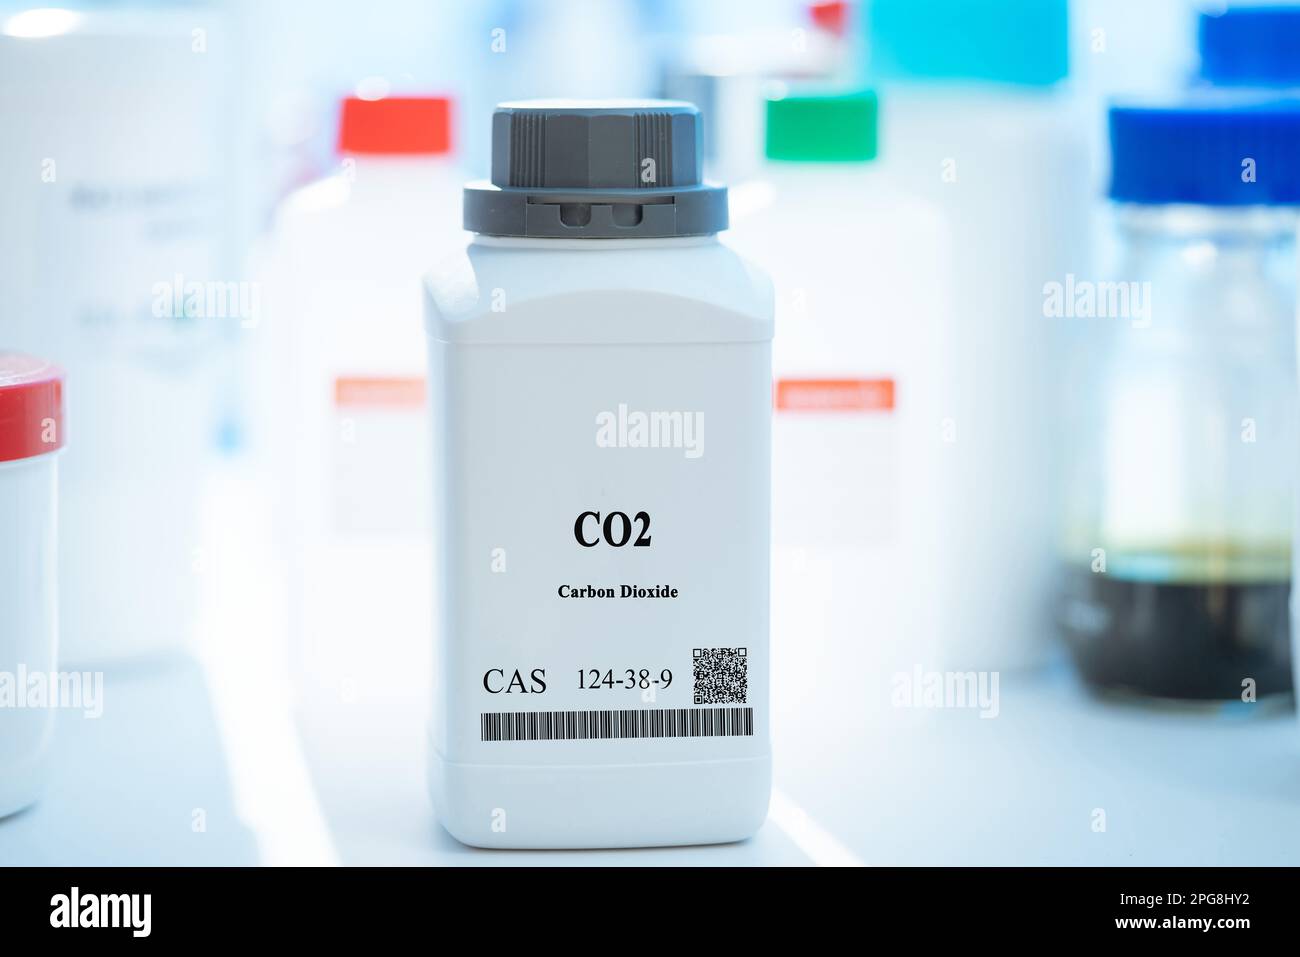 CO2 dioxyde de carbone cas 124-38-9 substance chimique dans un emballage de laboratoire en plastique blanc Banque D'Images